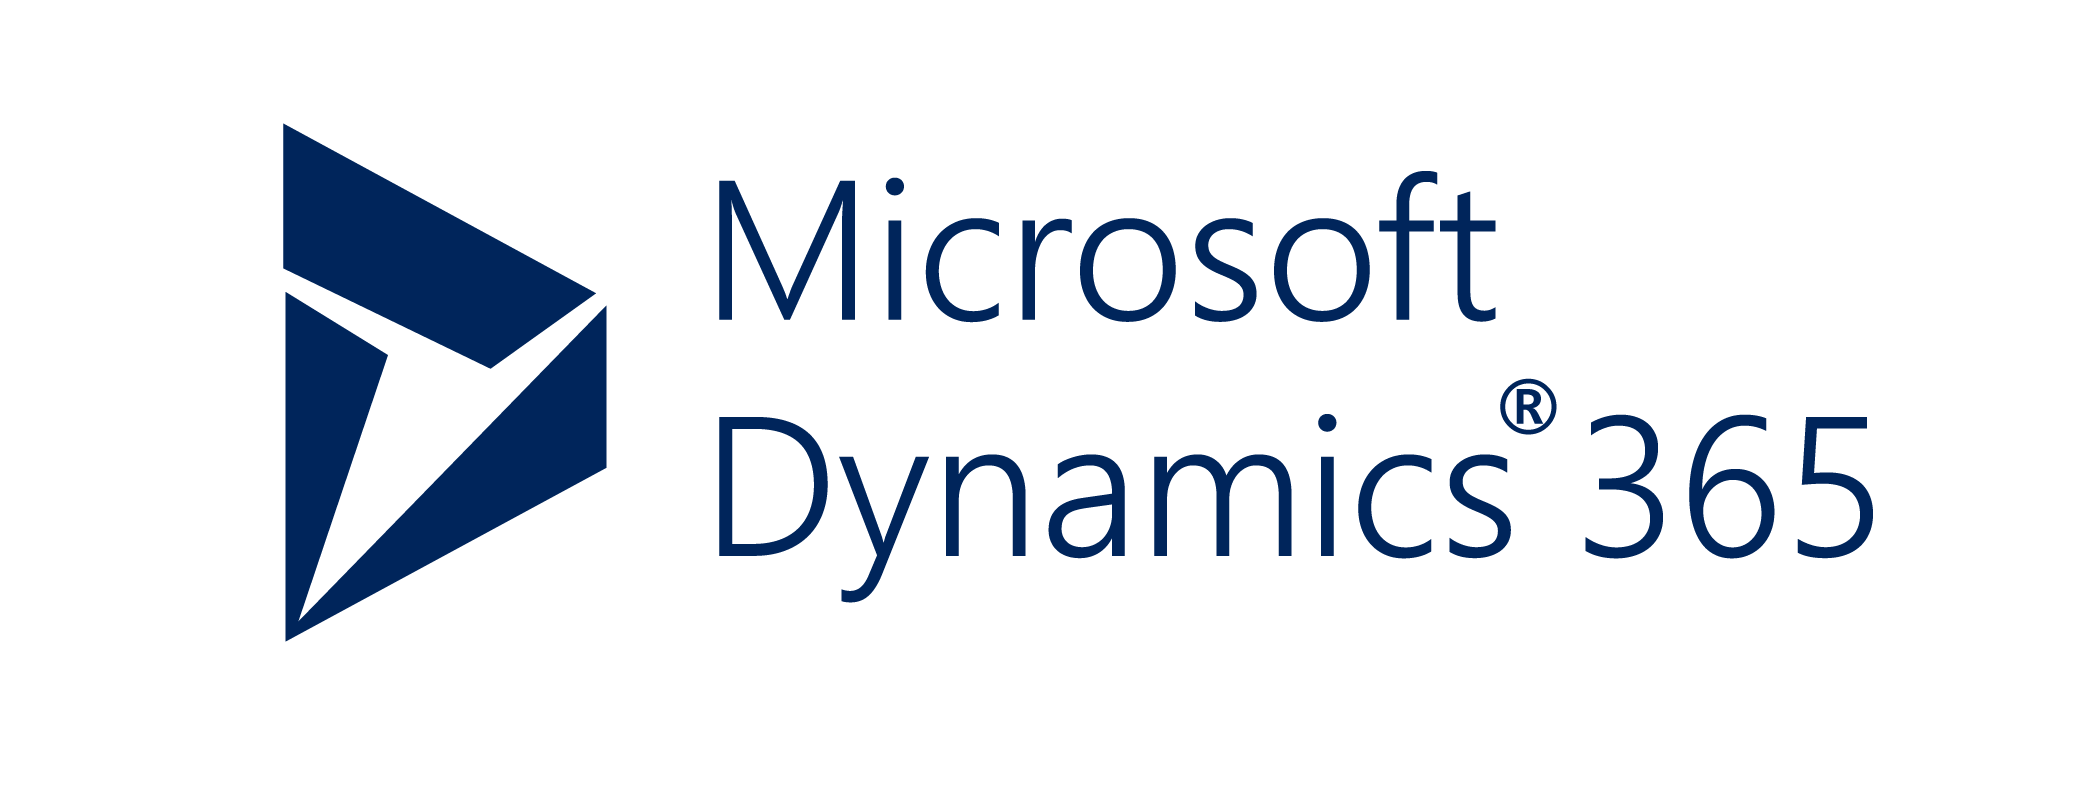 Dynamics_365_logo_PNG1